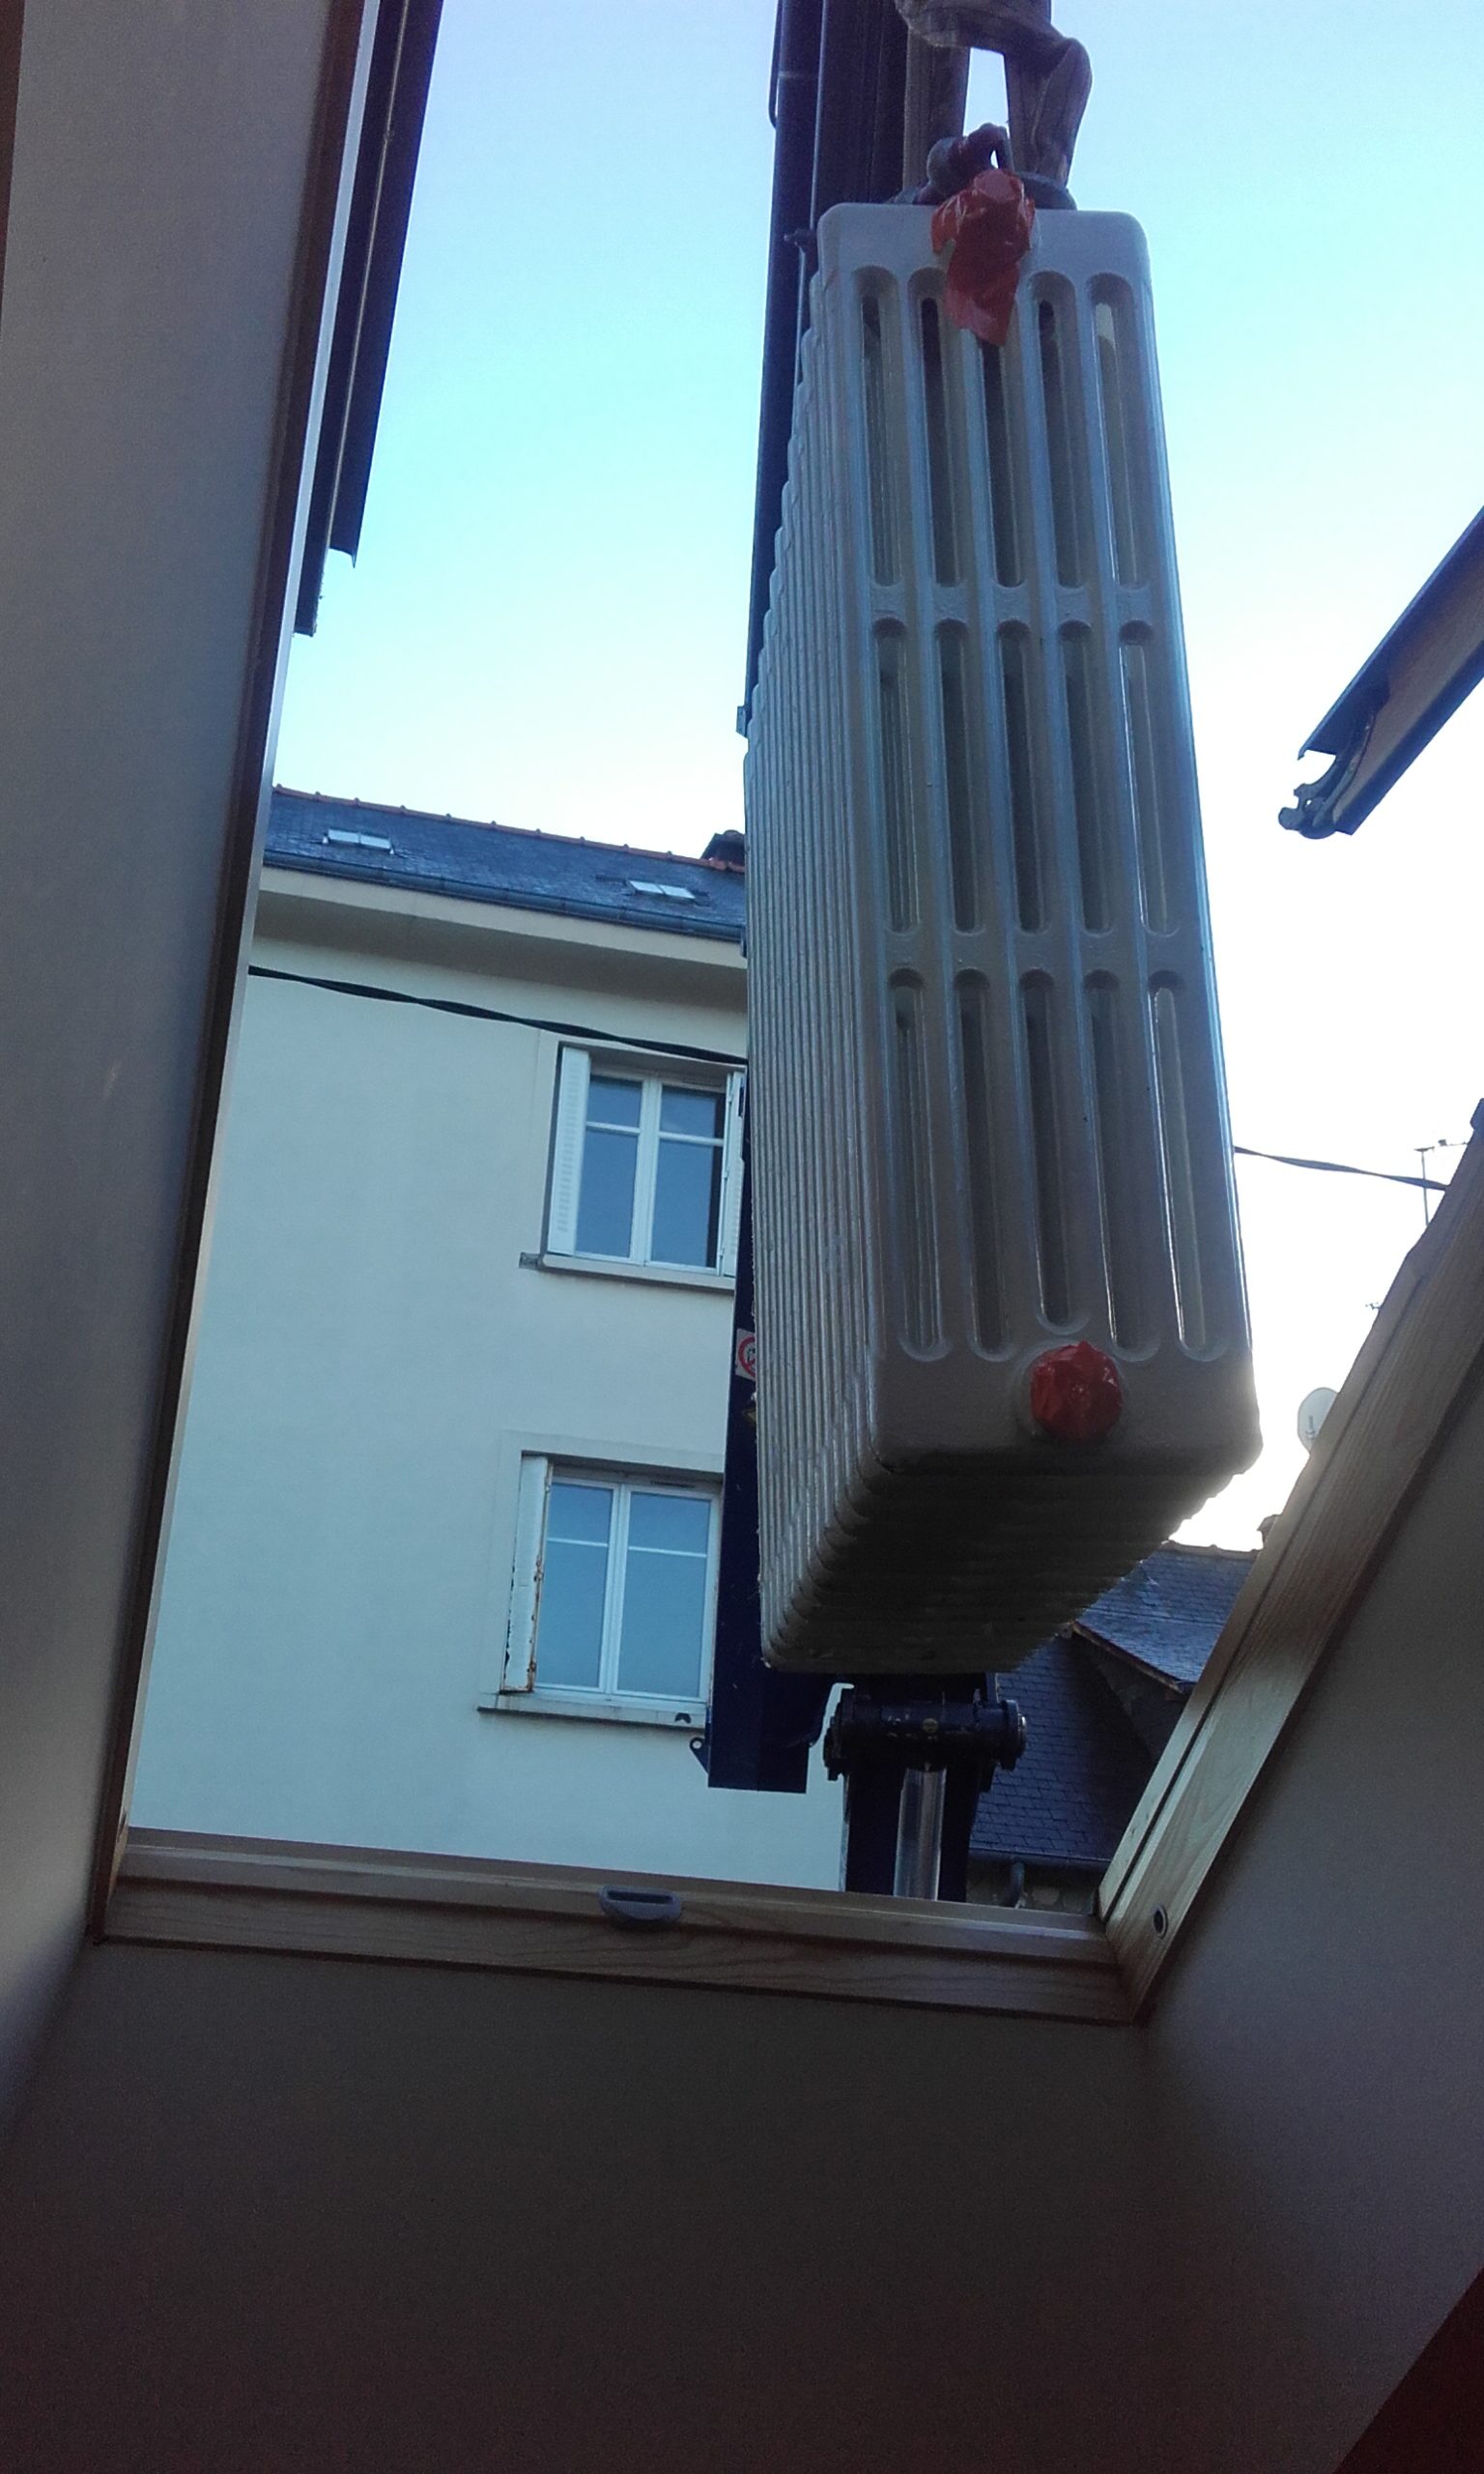 Sortie d'un radiateur en fonte par la fenêtre